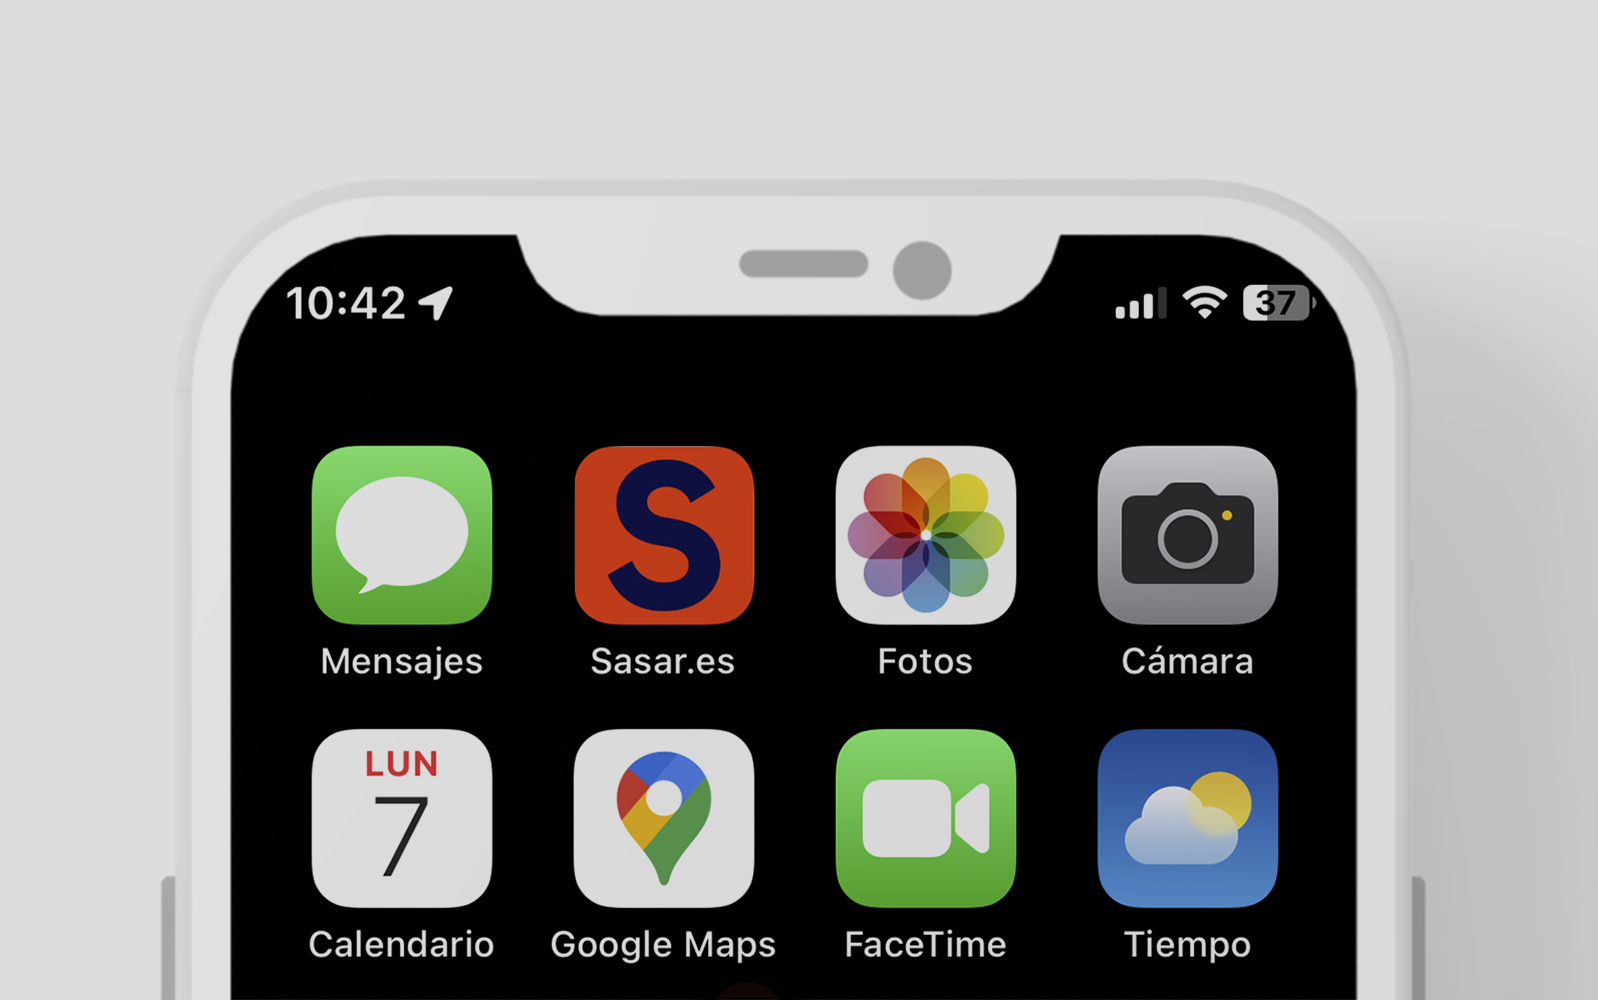 Sasar.es-Icono App